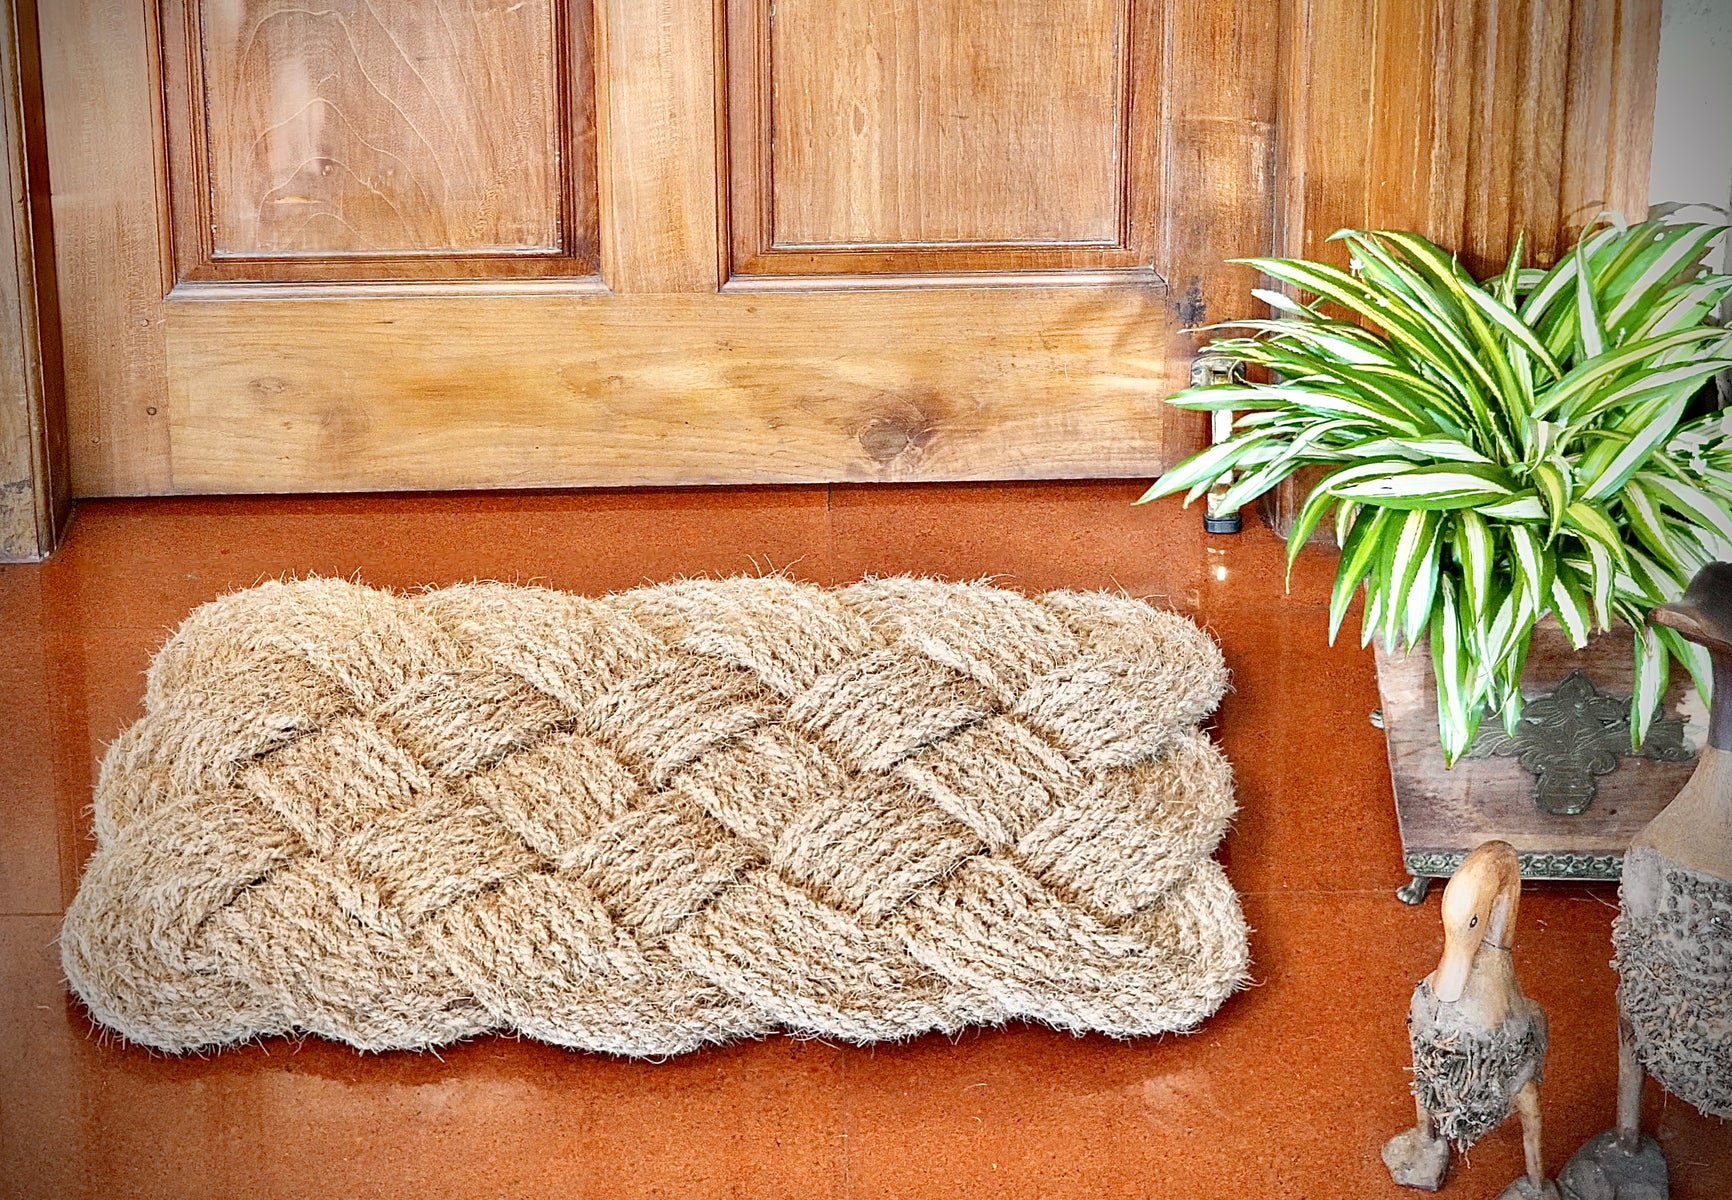 OnlyMat Lovers Knot - 100% Natural Handloom Coir Floor Mat